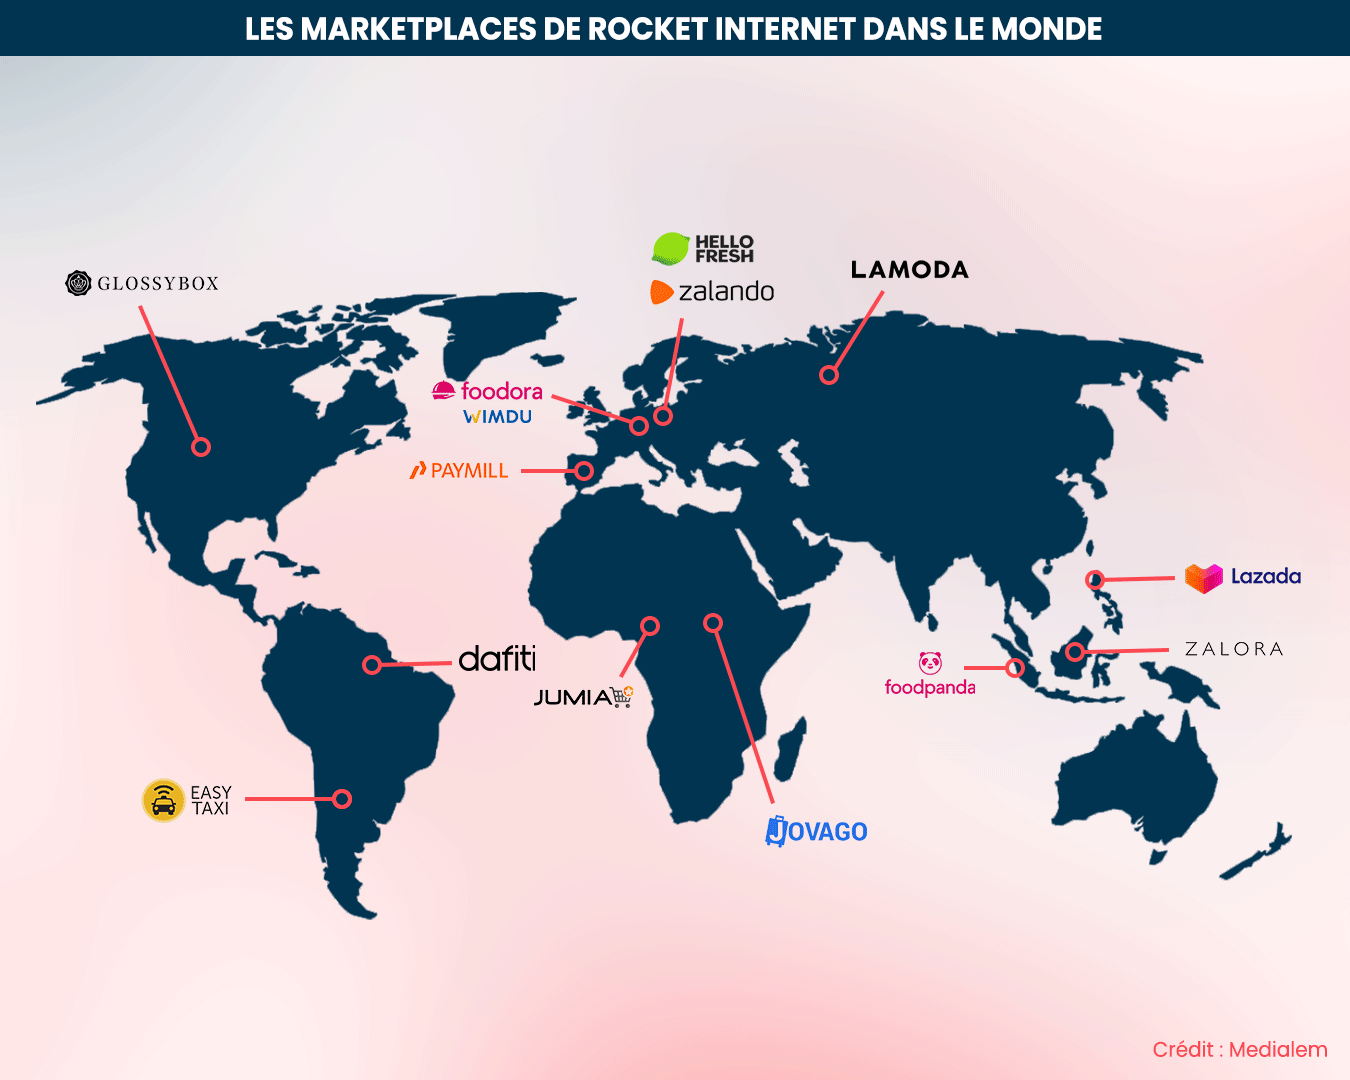 Carte des marketplaces de rocket internet dans le monde